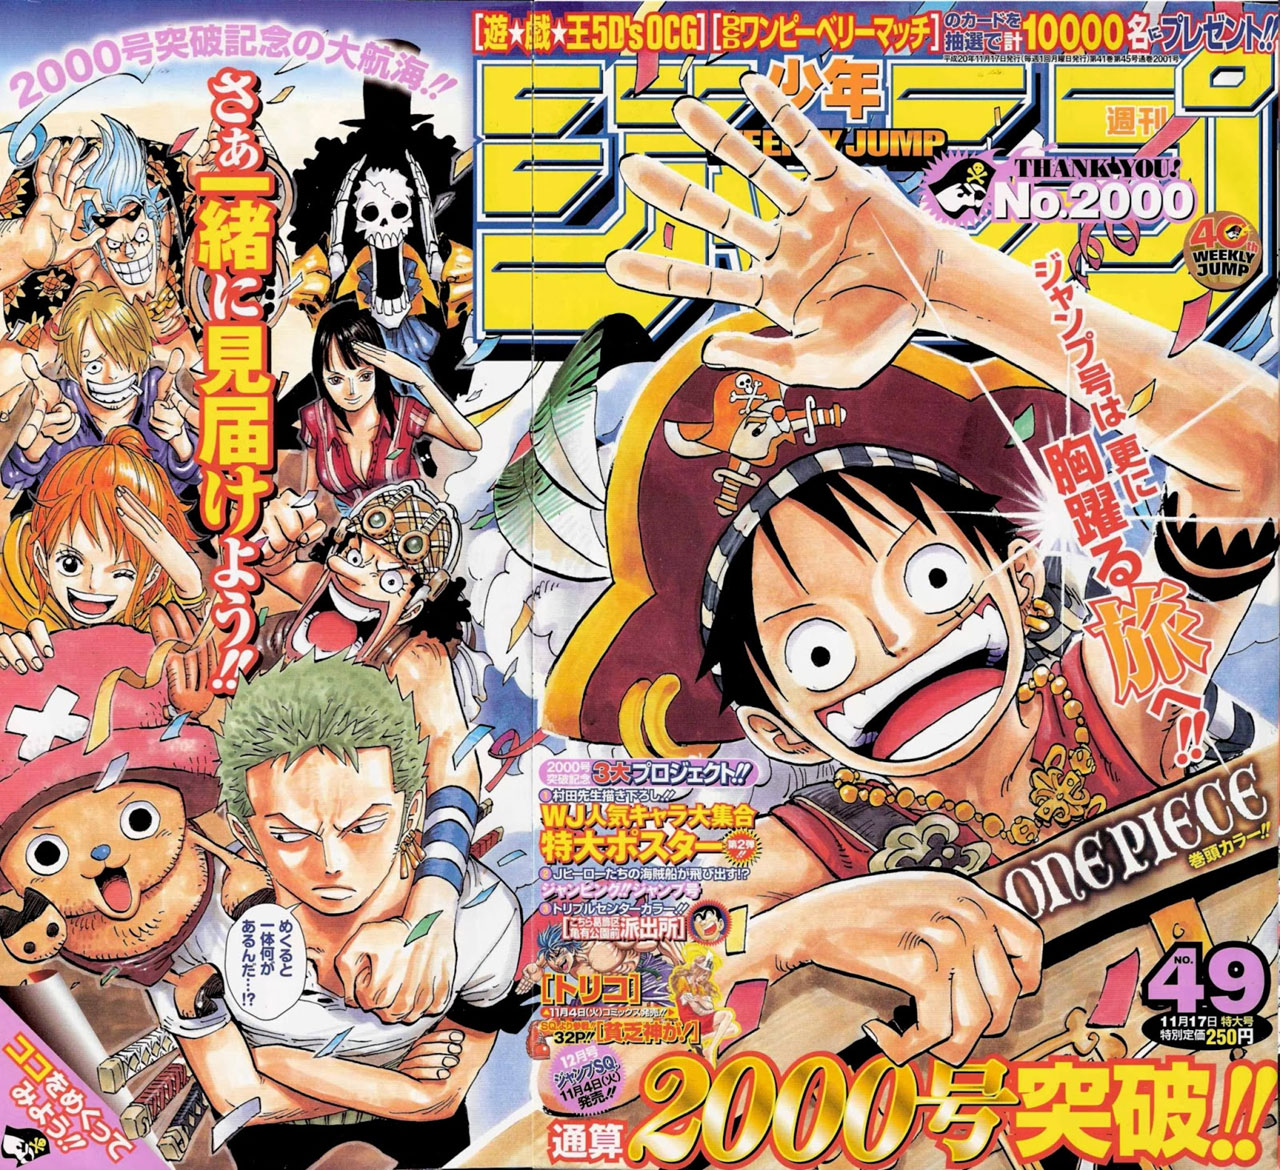 Shonen jump 2008 issue 49